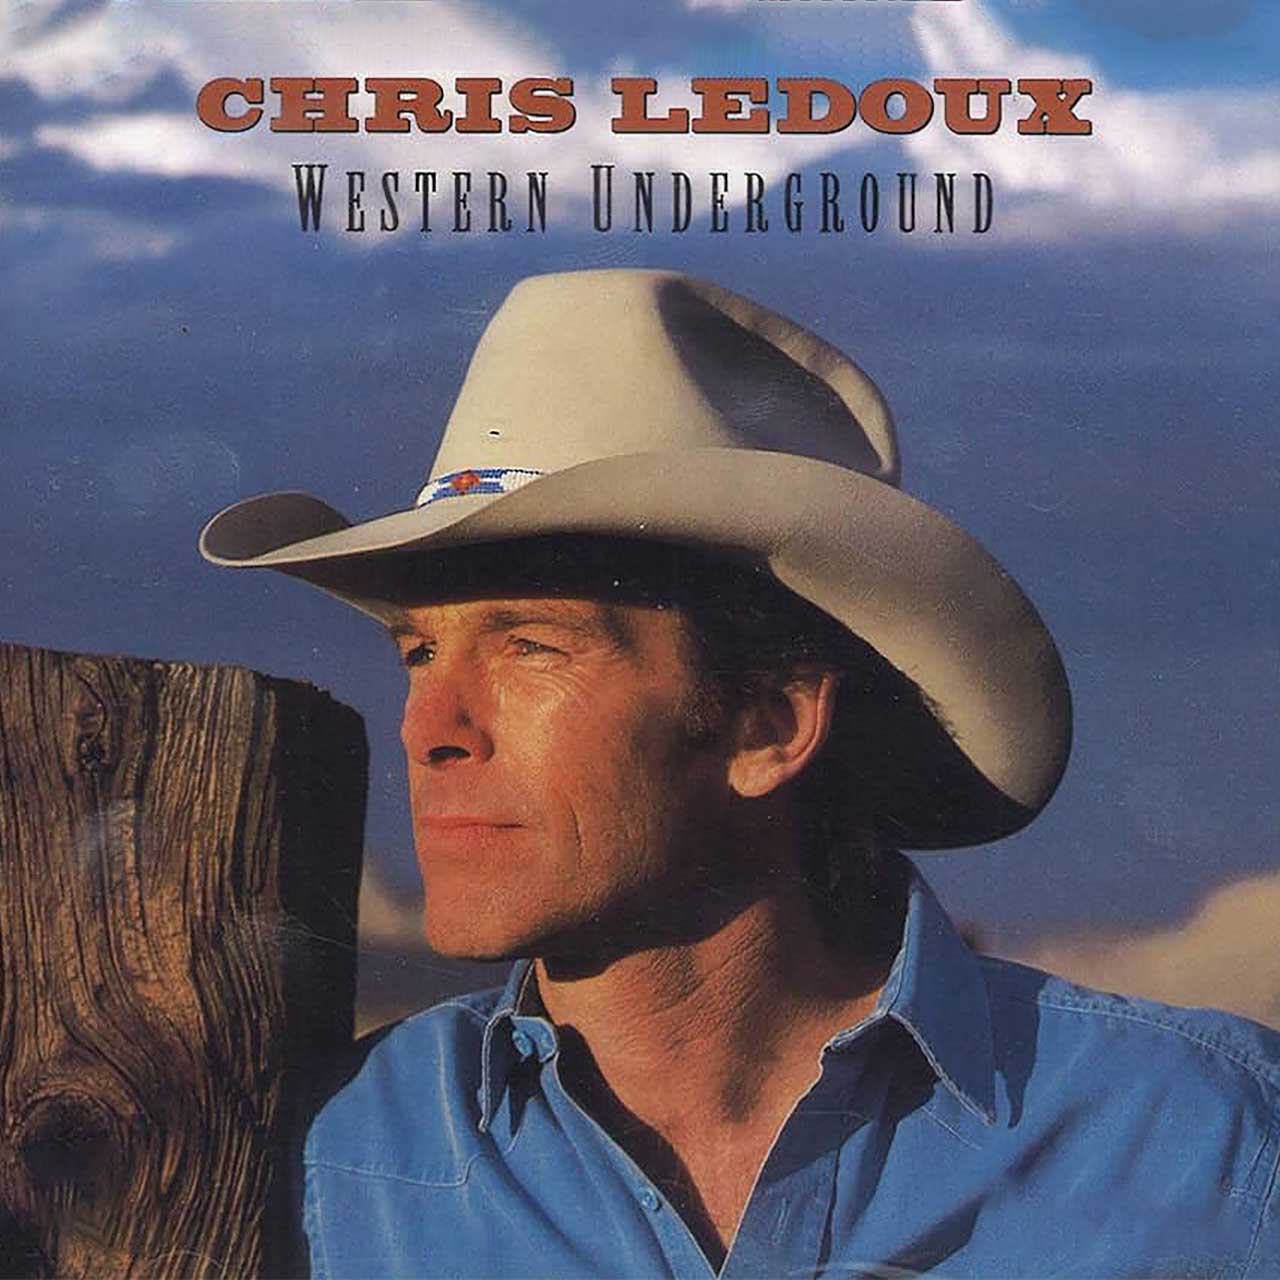 Chris LeDoux’s legendary cowboy song